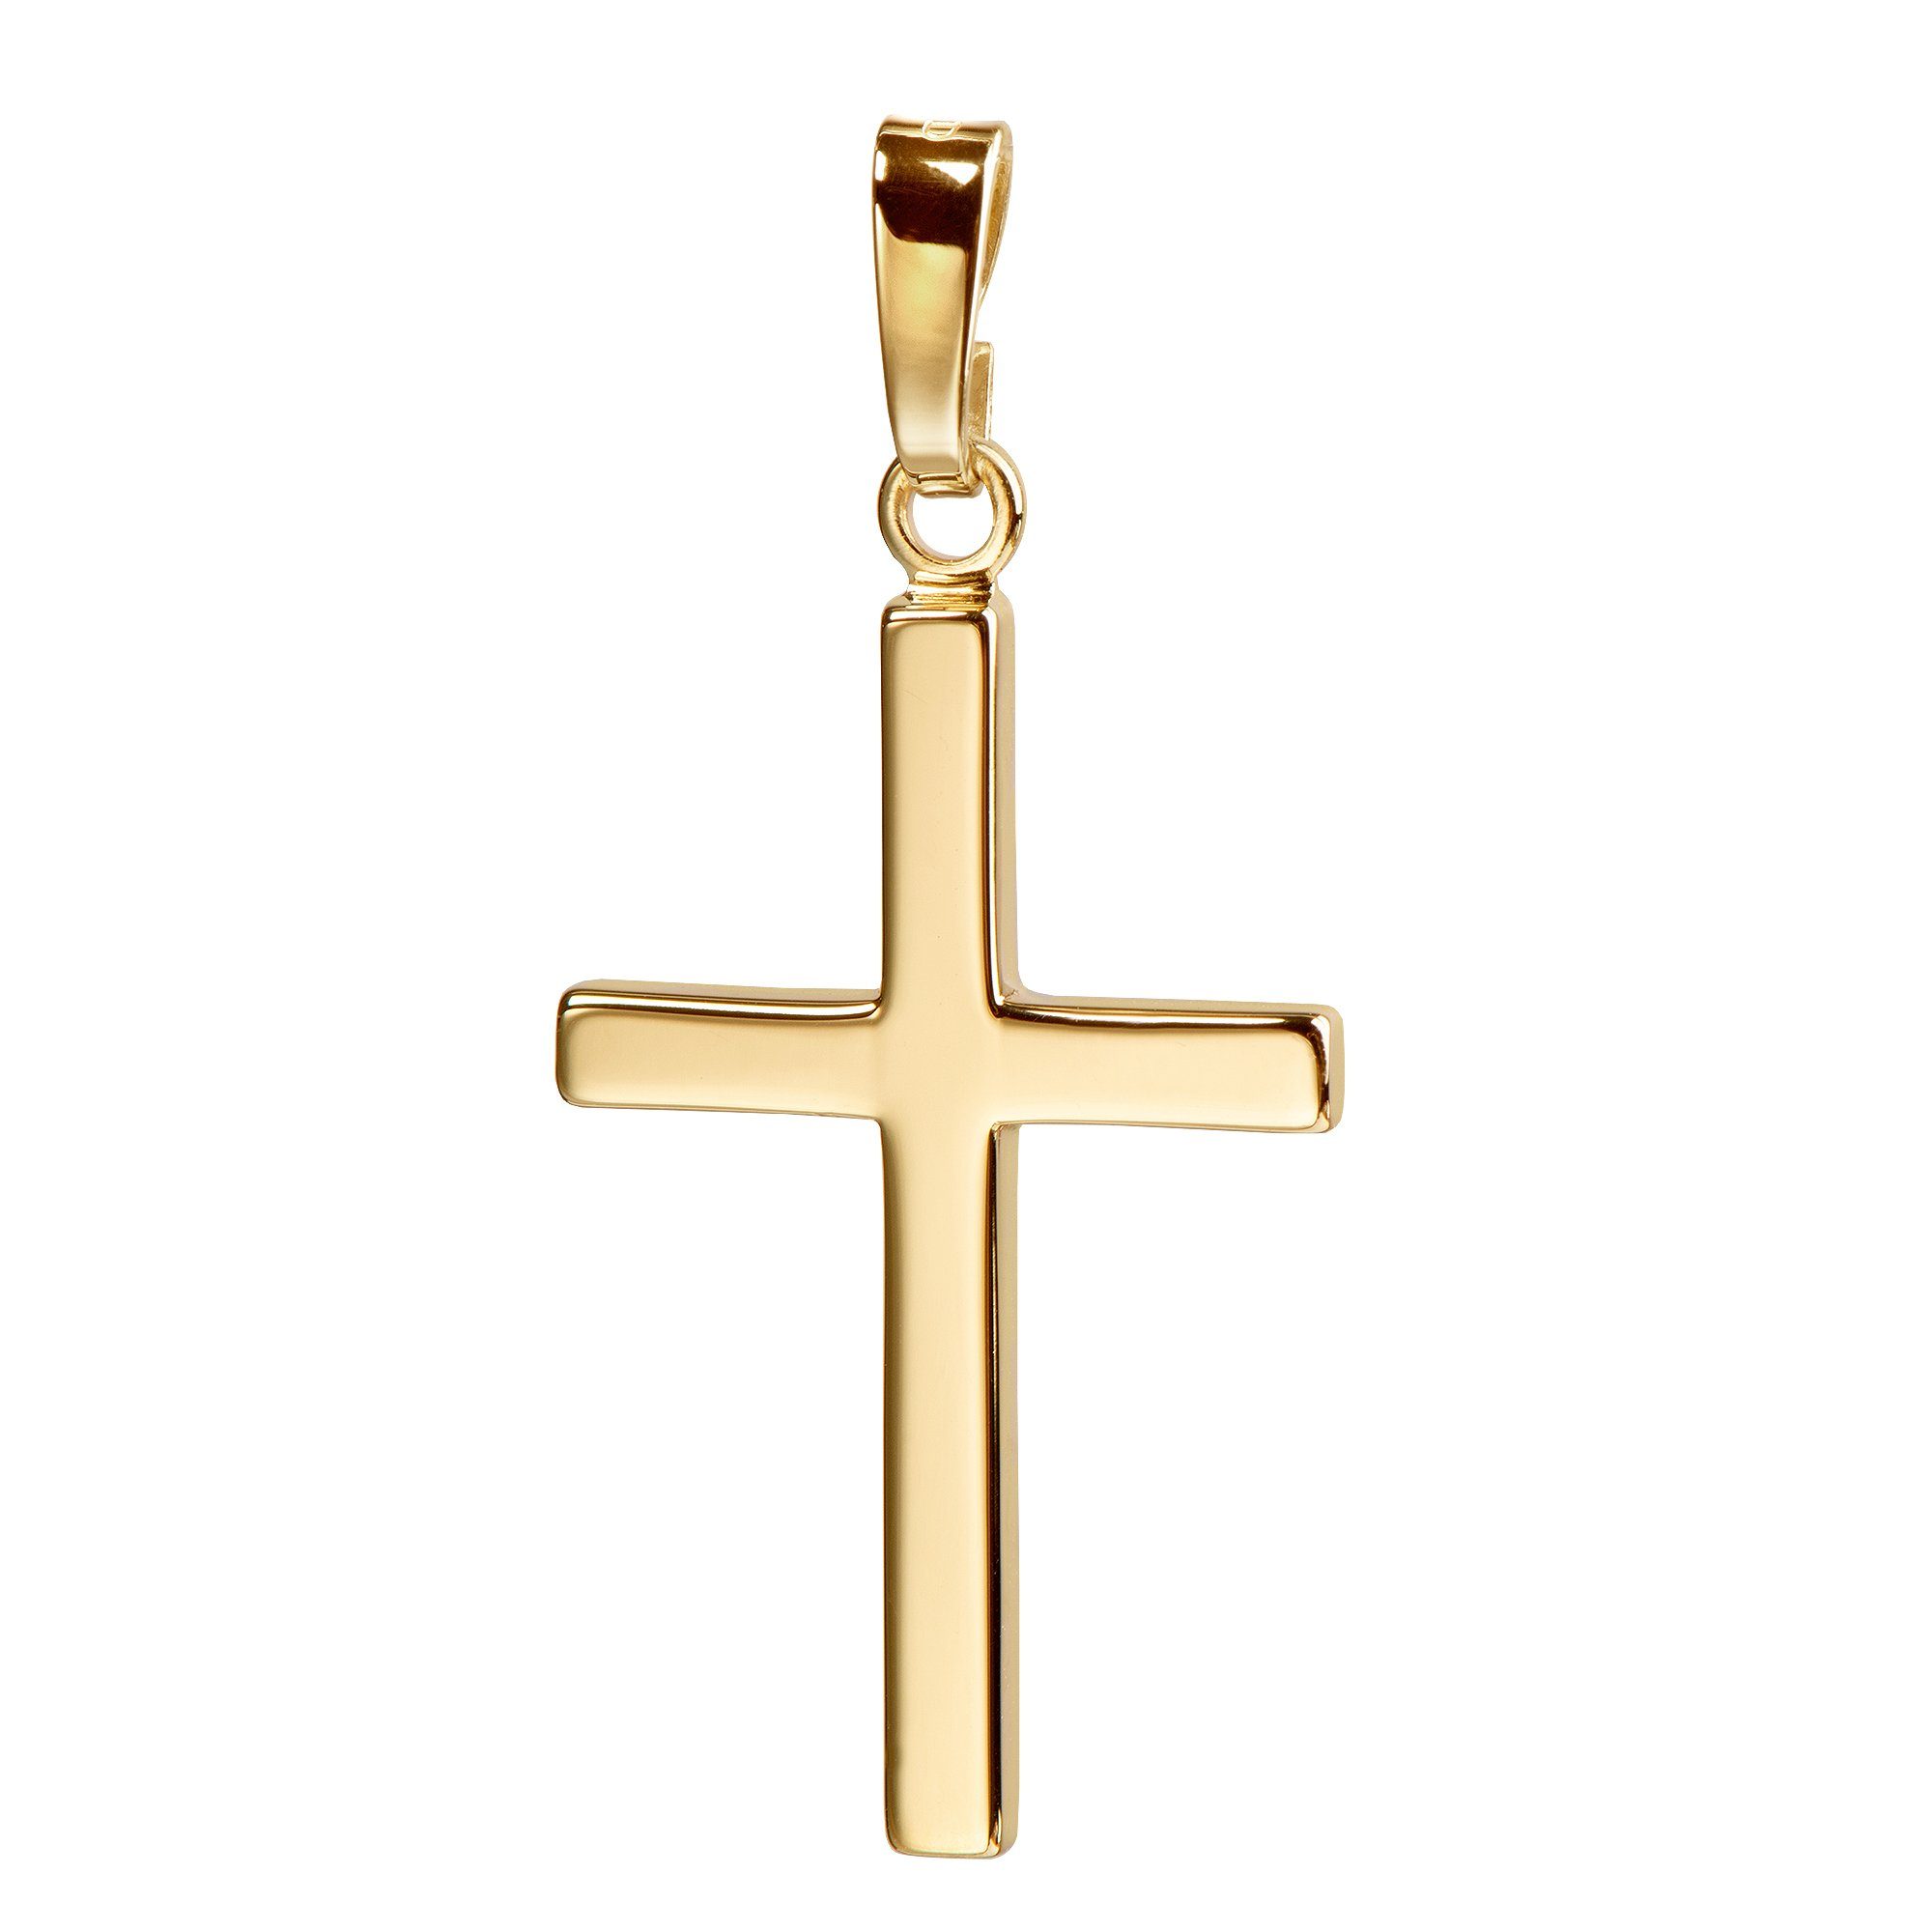 JEVELION Kreuzkette Kreuzanhänger 333 Gold - Made in Germany (Goldkreuz,  für Damen und Herren), Mit Kette vergoldet- Länge wählbar 36 - 70 cm oder  ohne Kette.